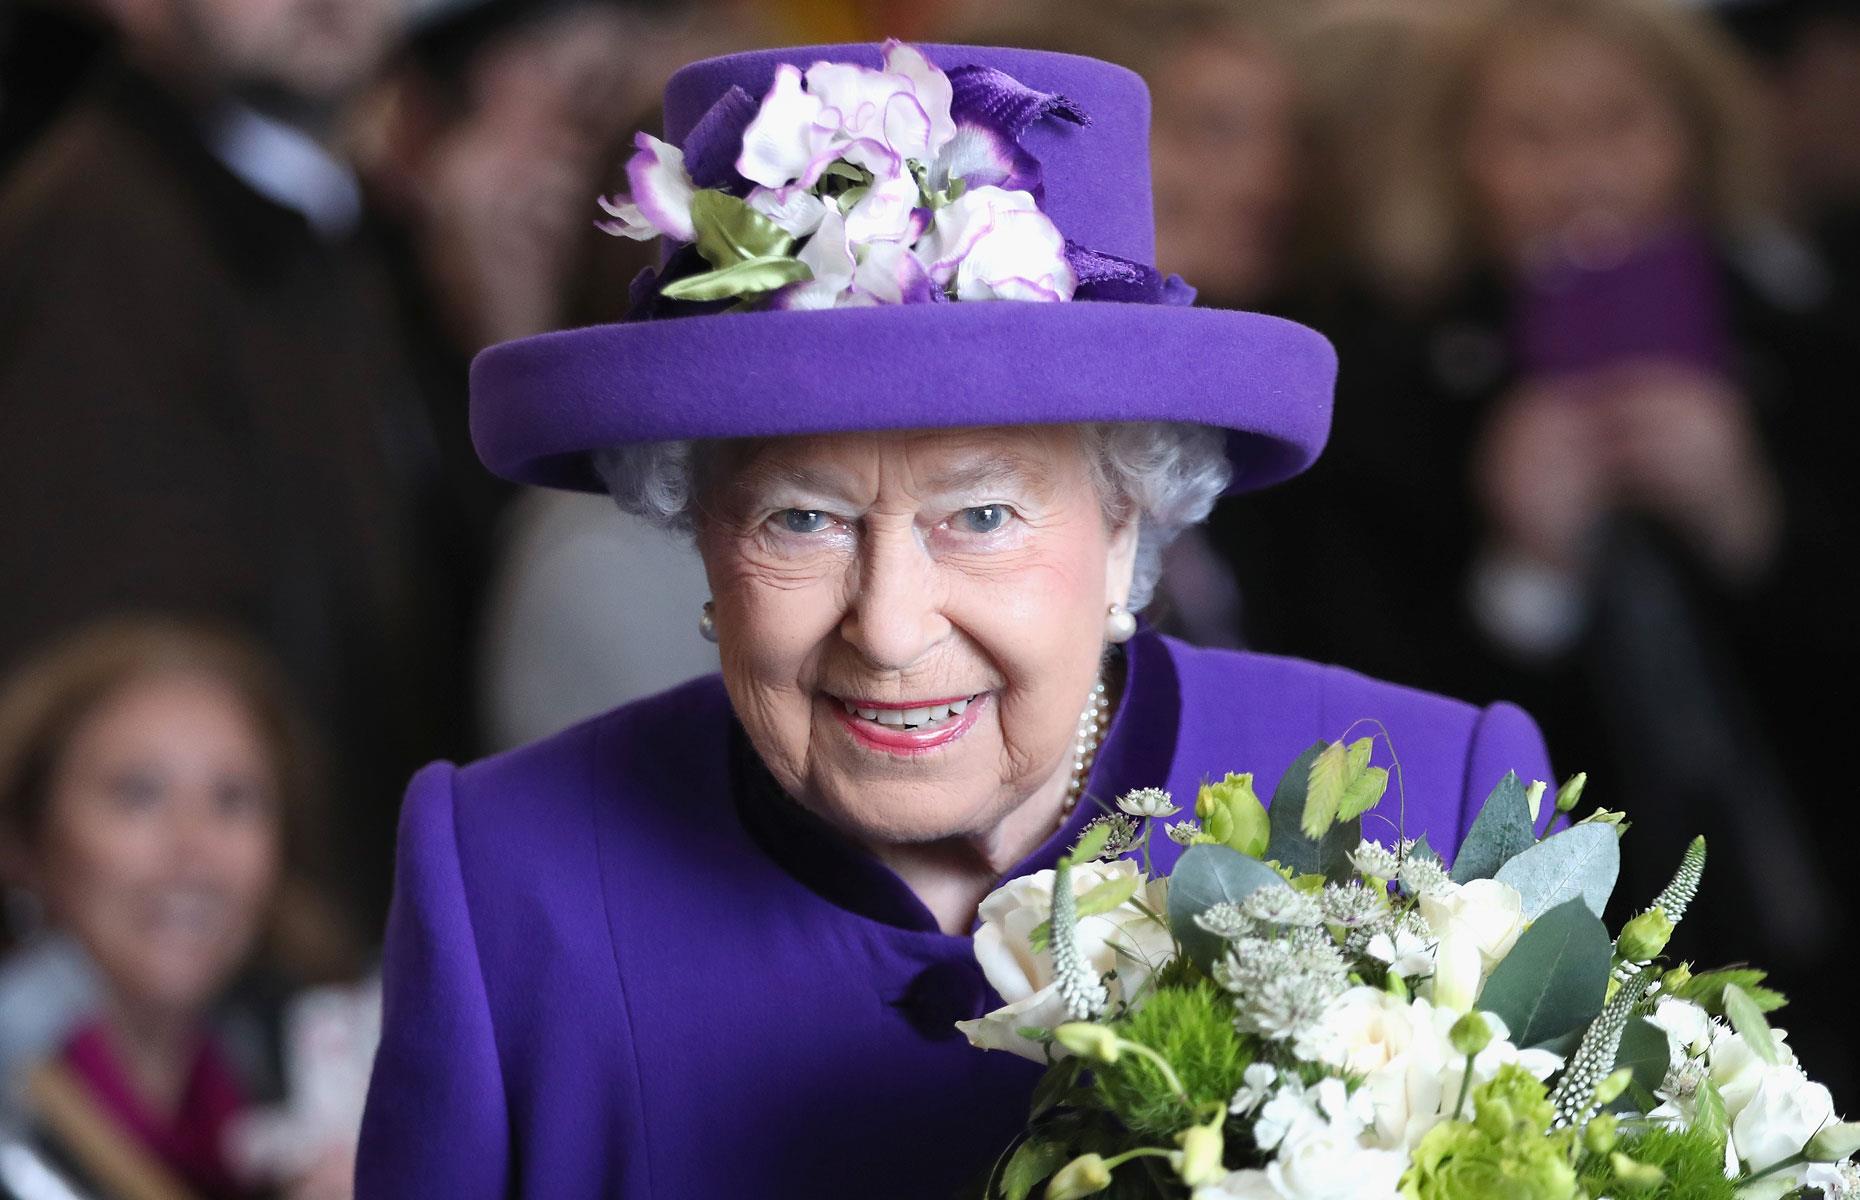 1. Queen Elizabeth II: 2.7 billion hectares 